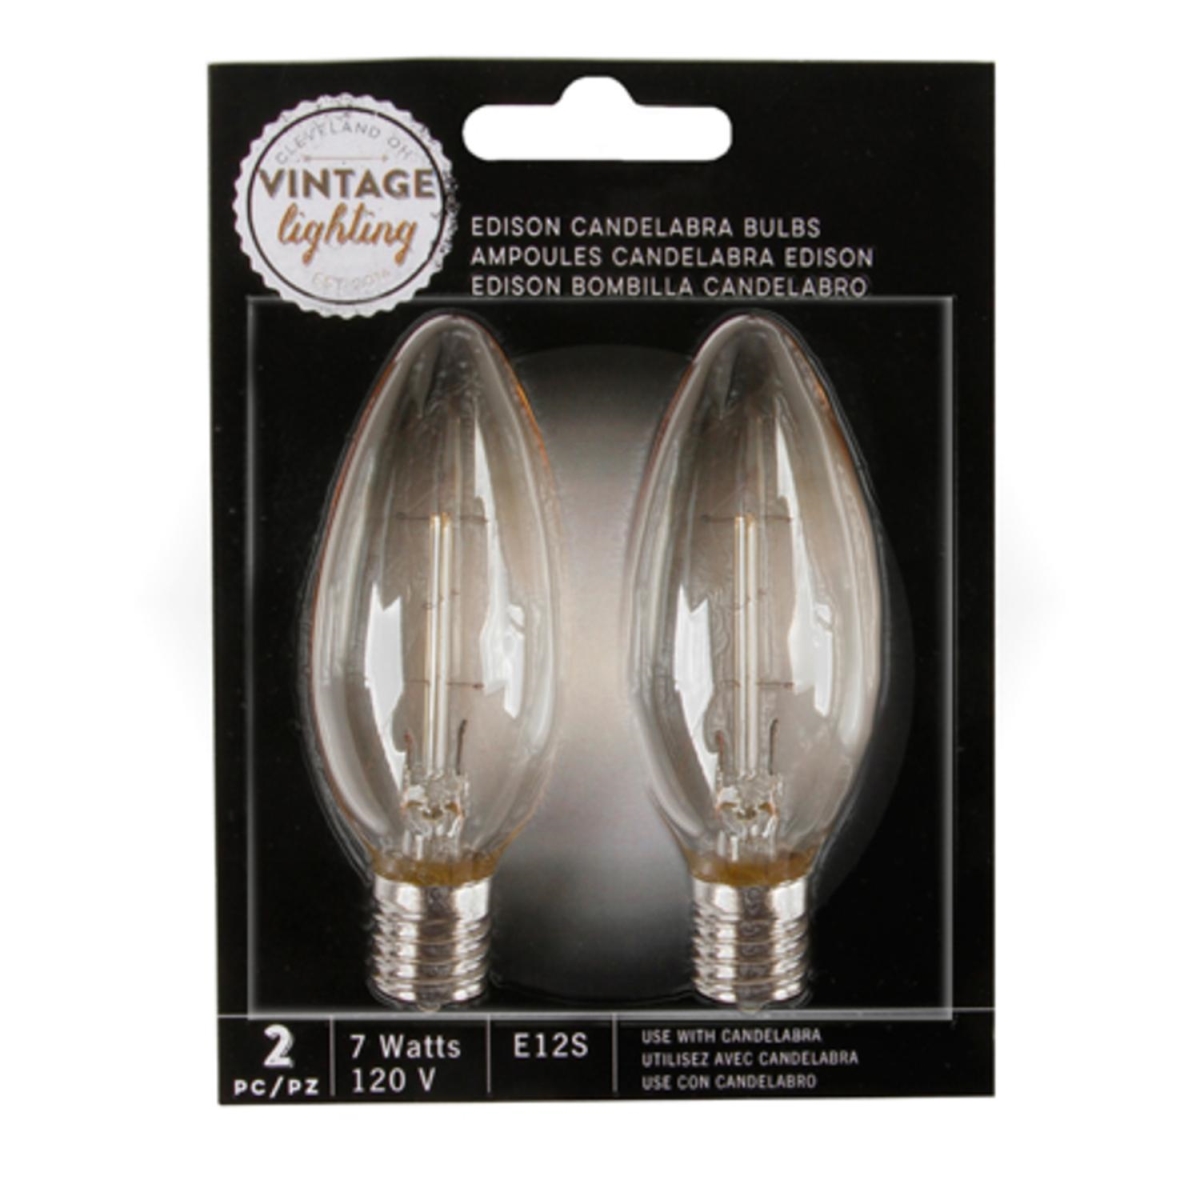 32038405 7 Watt Cleveland Vintage Lighting Edison Style E12s Base Candelabra Bulbs - Pack Of 2